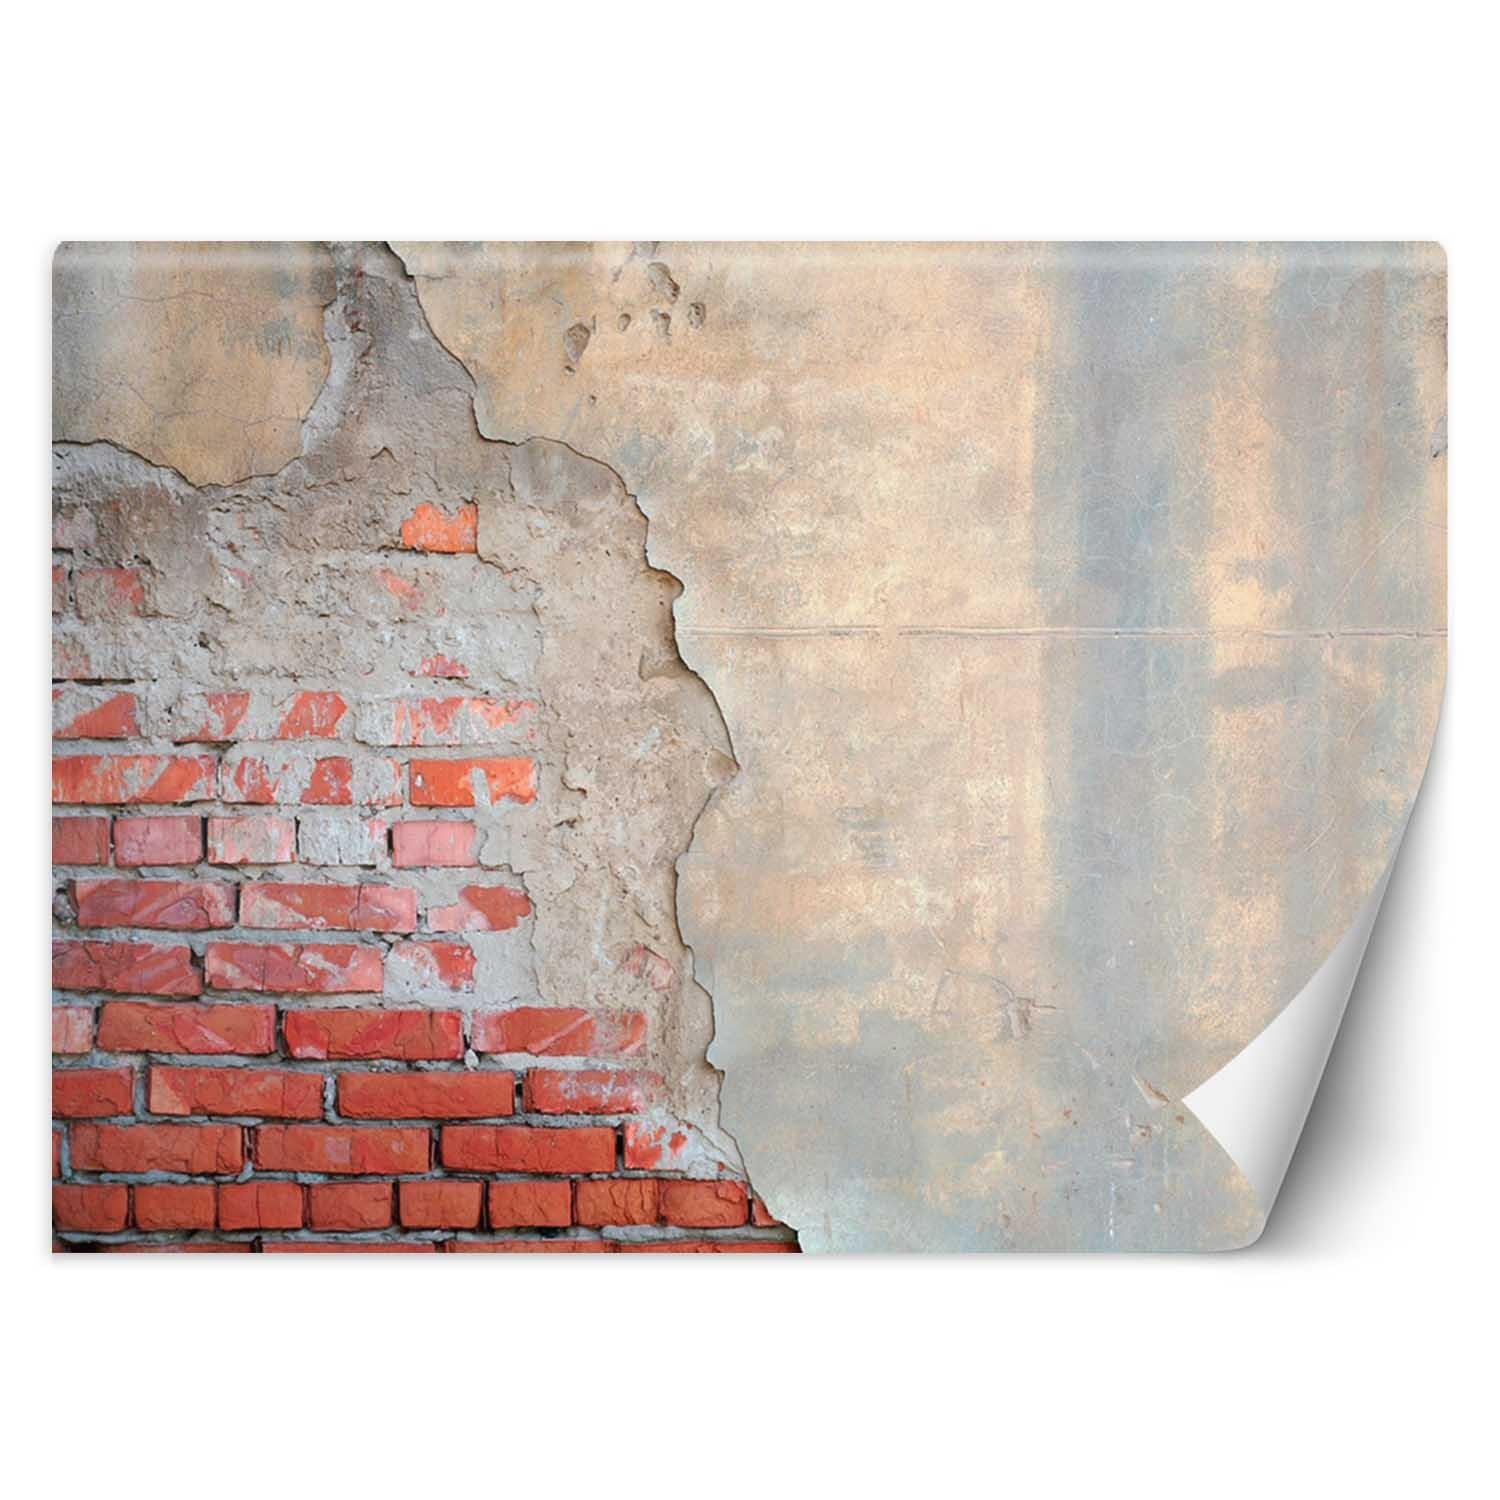 Trend24 – Behang – Bakstenen Muur – Vliesbehang – Behang Woonkamer – Fotobehang – 350x245x2 cm – Incl. behanglijm